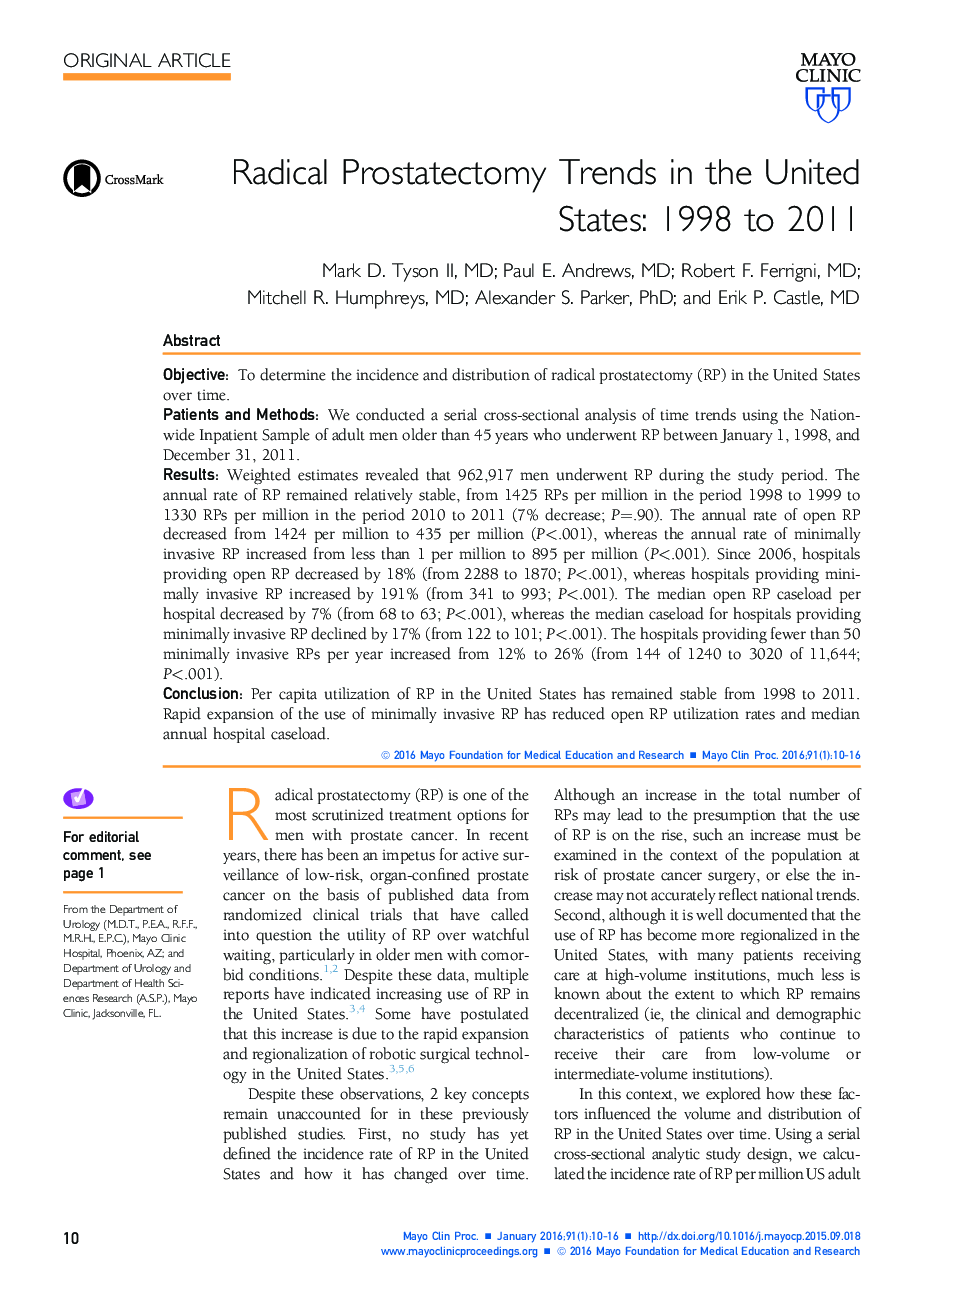 روند پروستاتکتومی رادیکال در ایالات متحده: 1998 تا 2011 